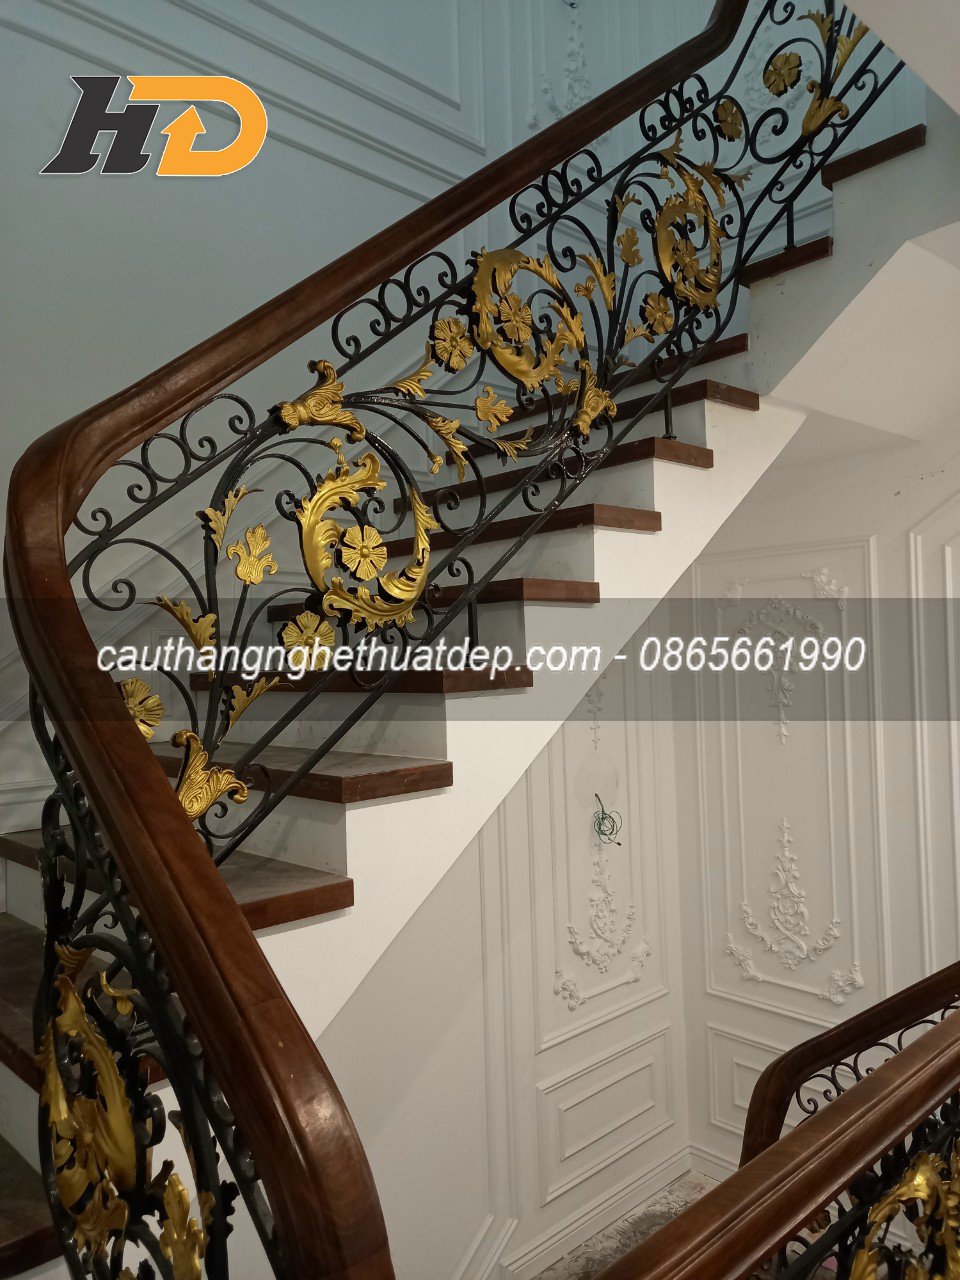 Cầu thang sắt nghệ thuật cao cấp mang nét đẹp sắc nét, tinh sảo